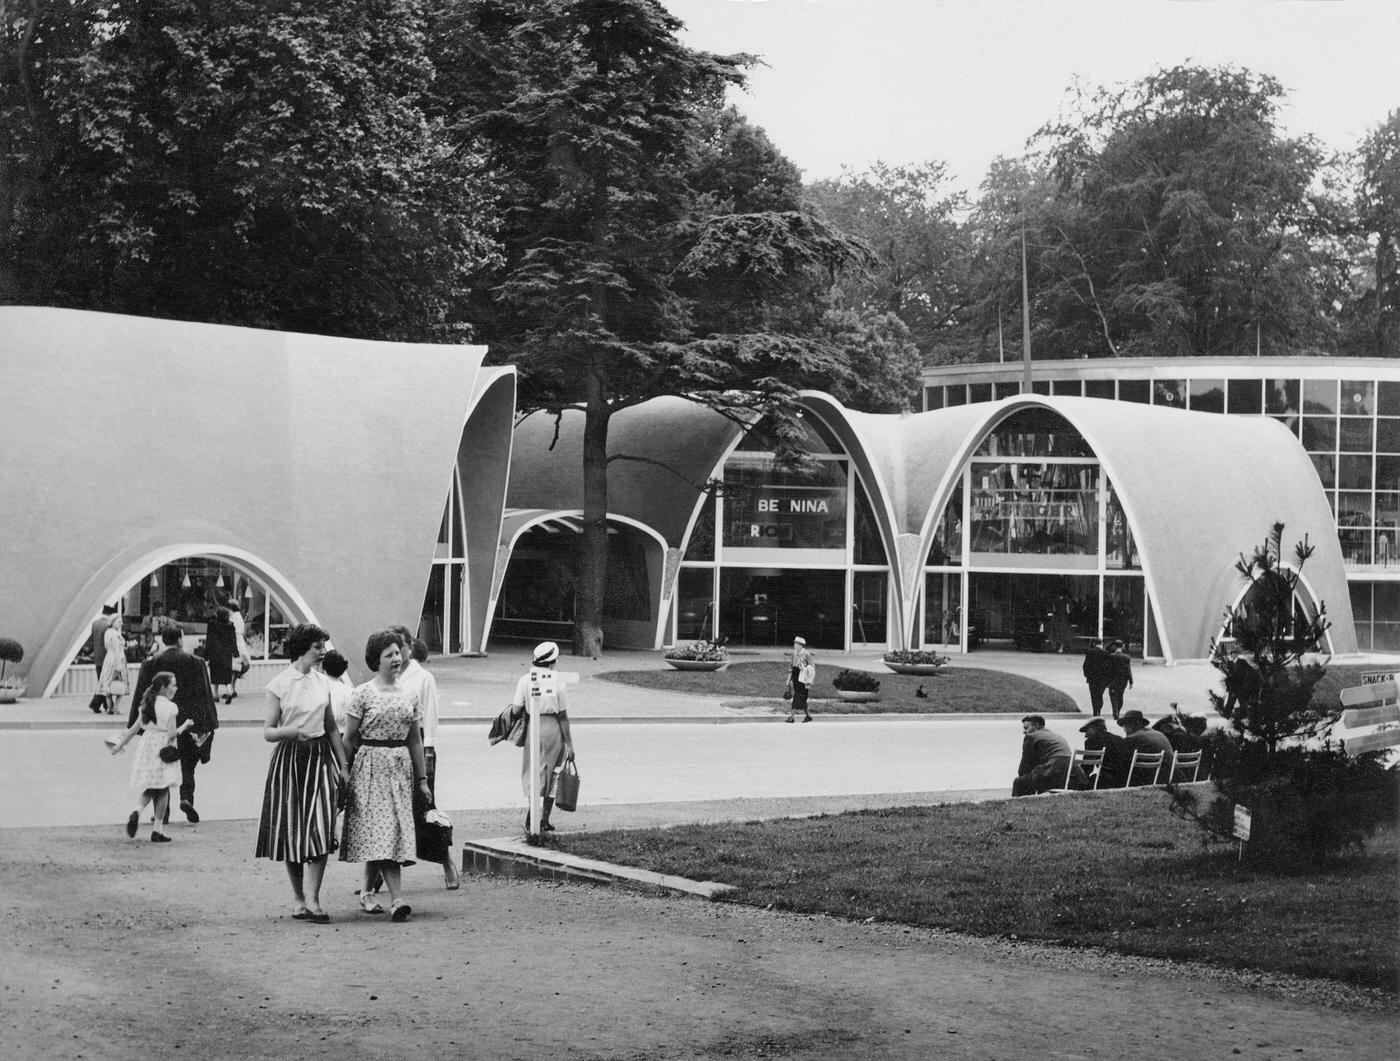 Brussels World’s Fair 1958